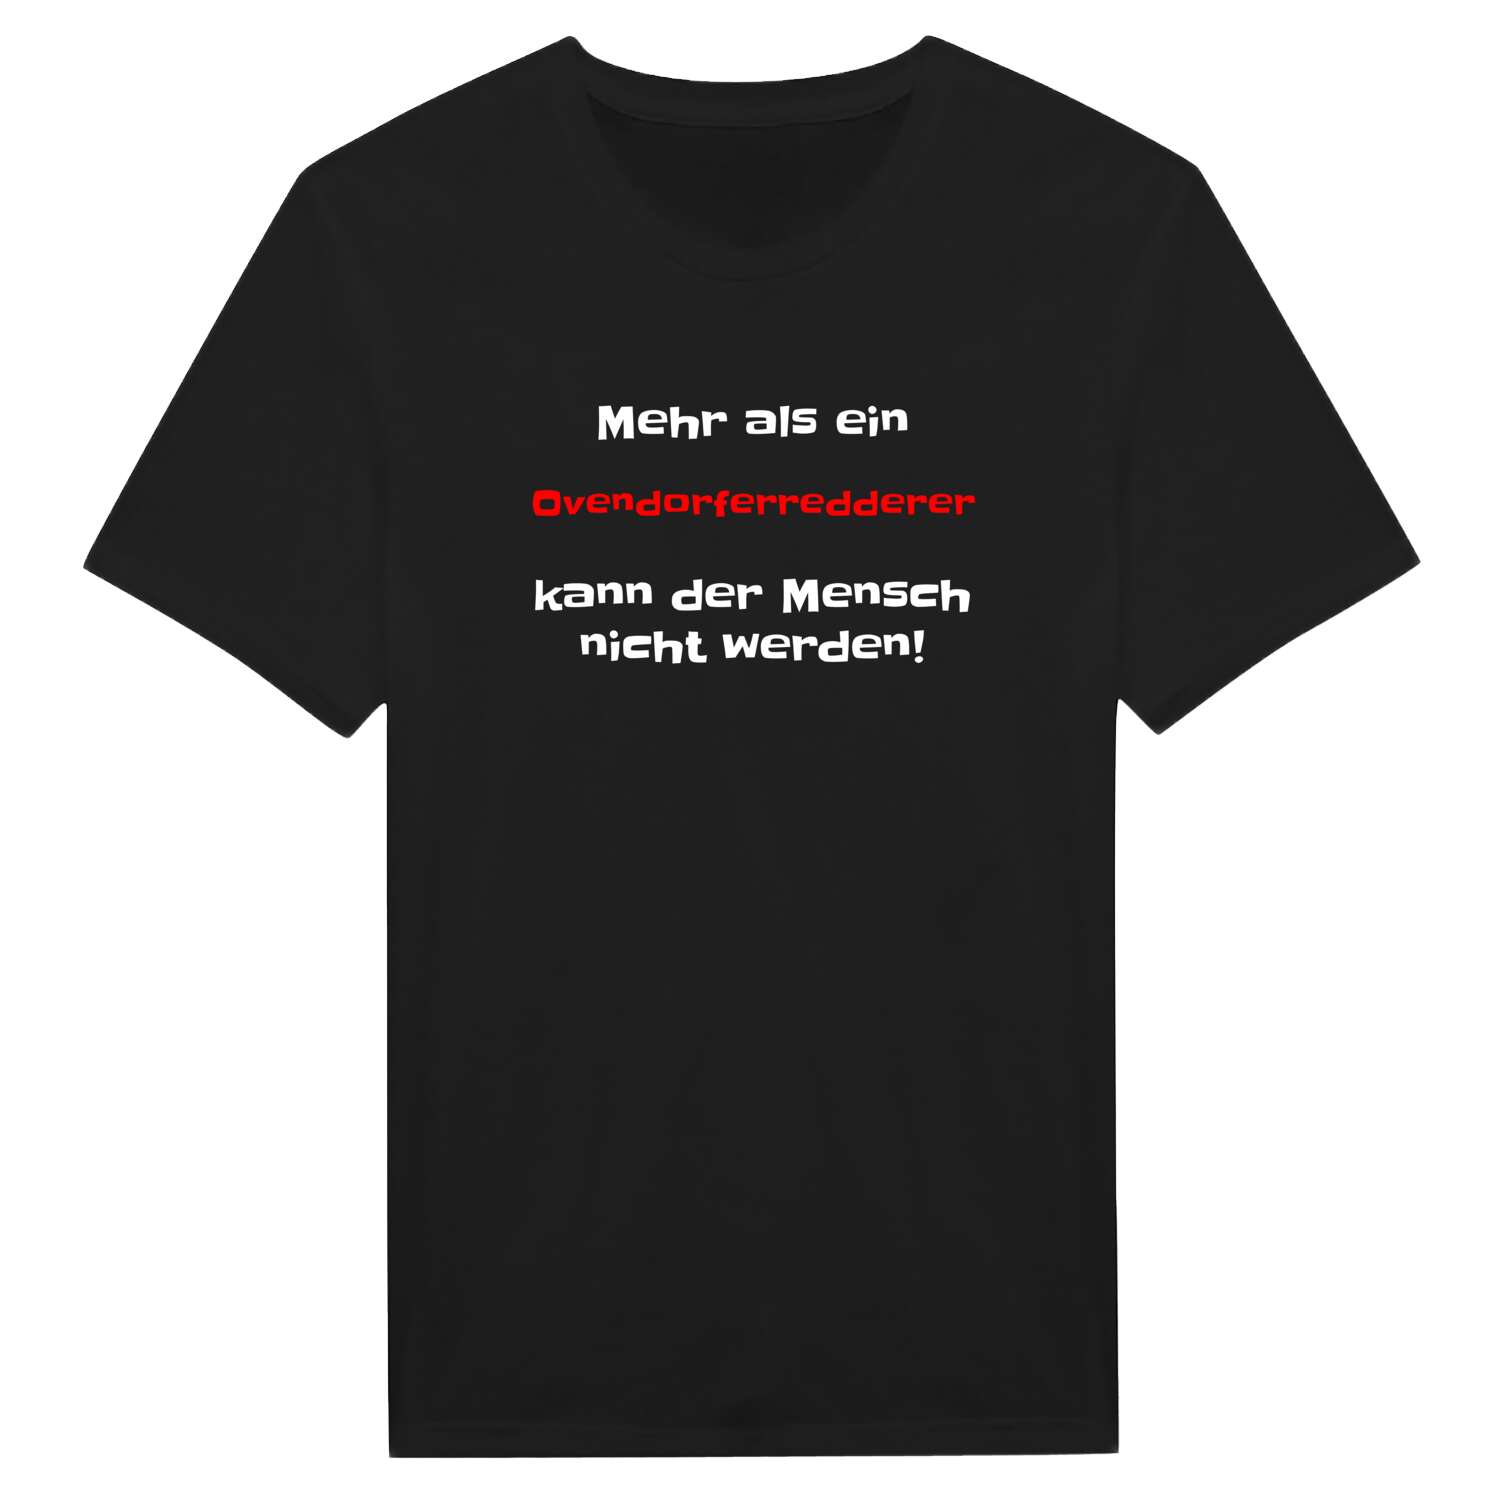 Ovendorferredder T-Shirt »Mehr als ein«